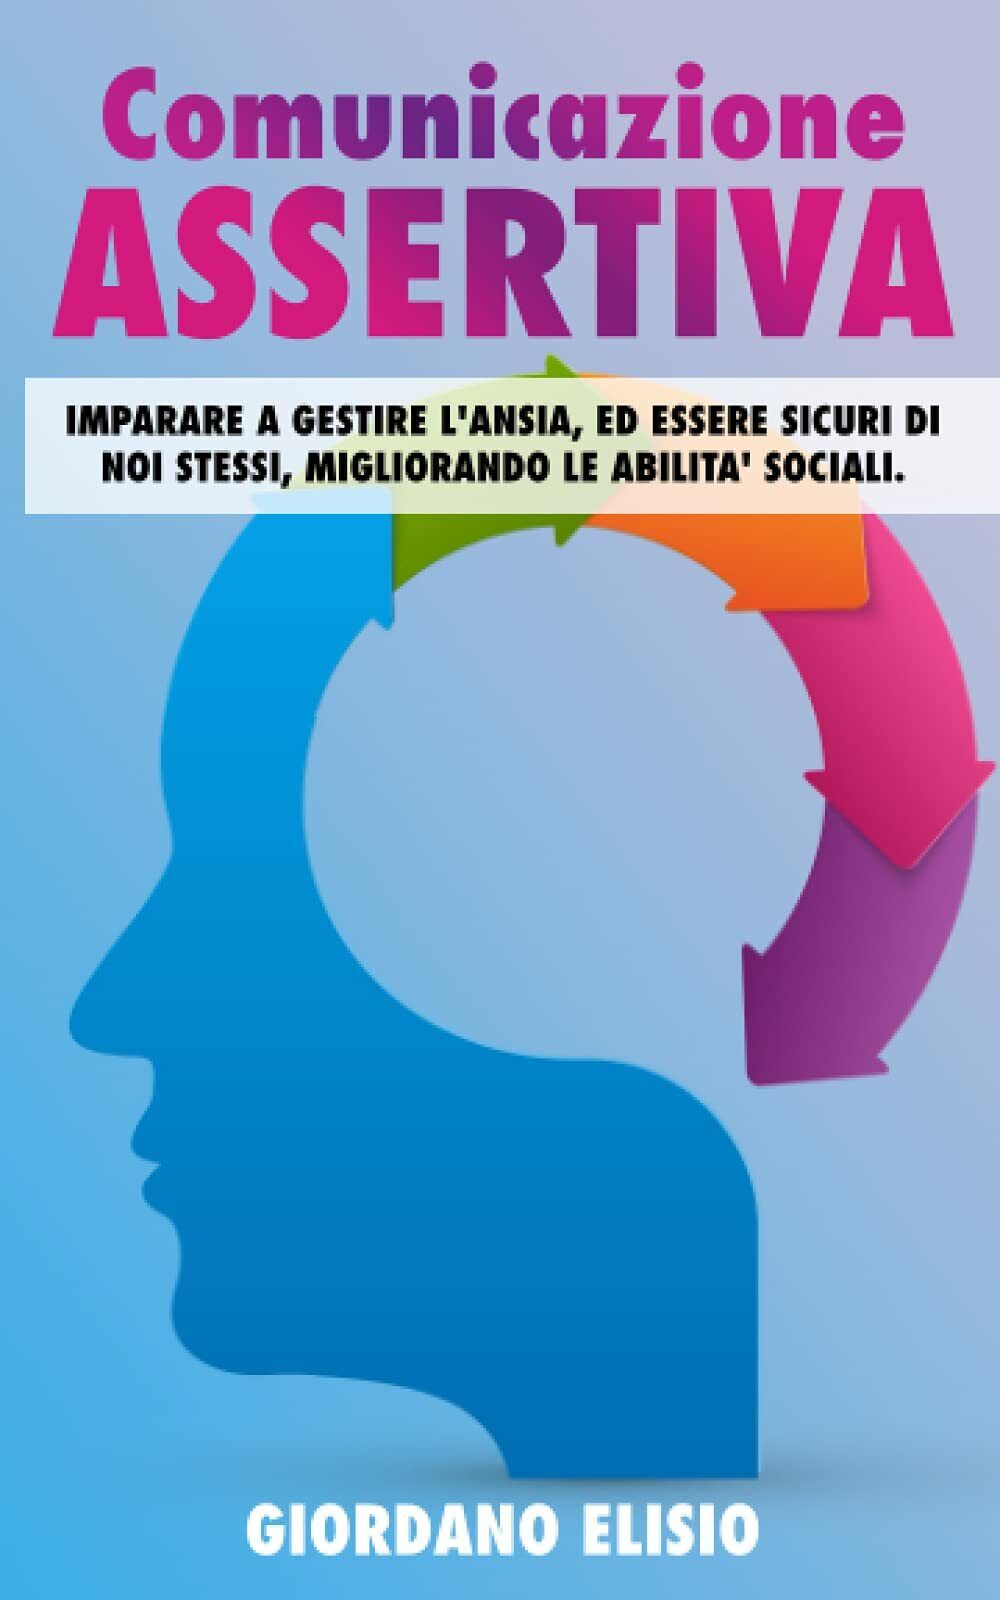 Comunicazione assertiva - Giordano Elisio - Independently Published, 2021